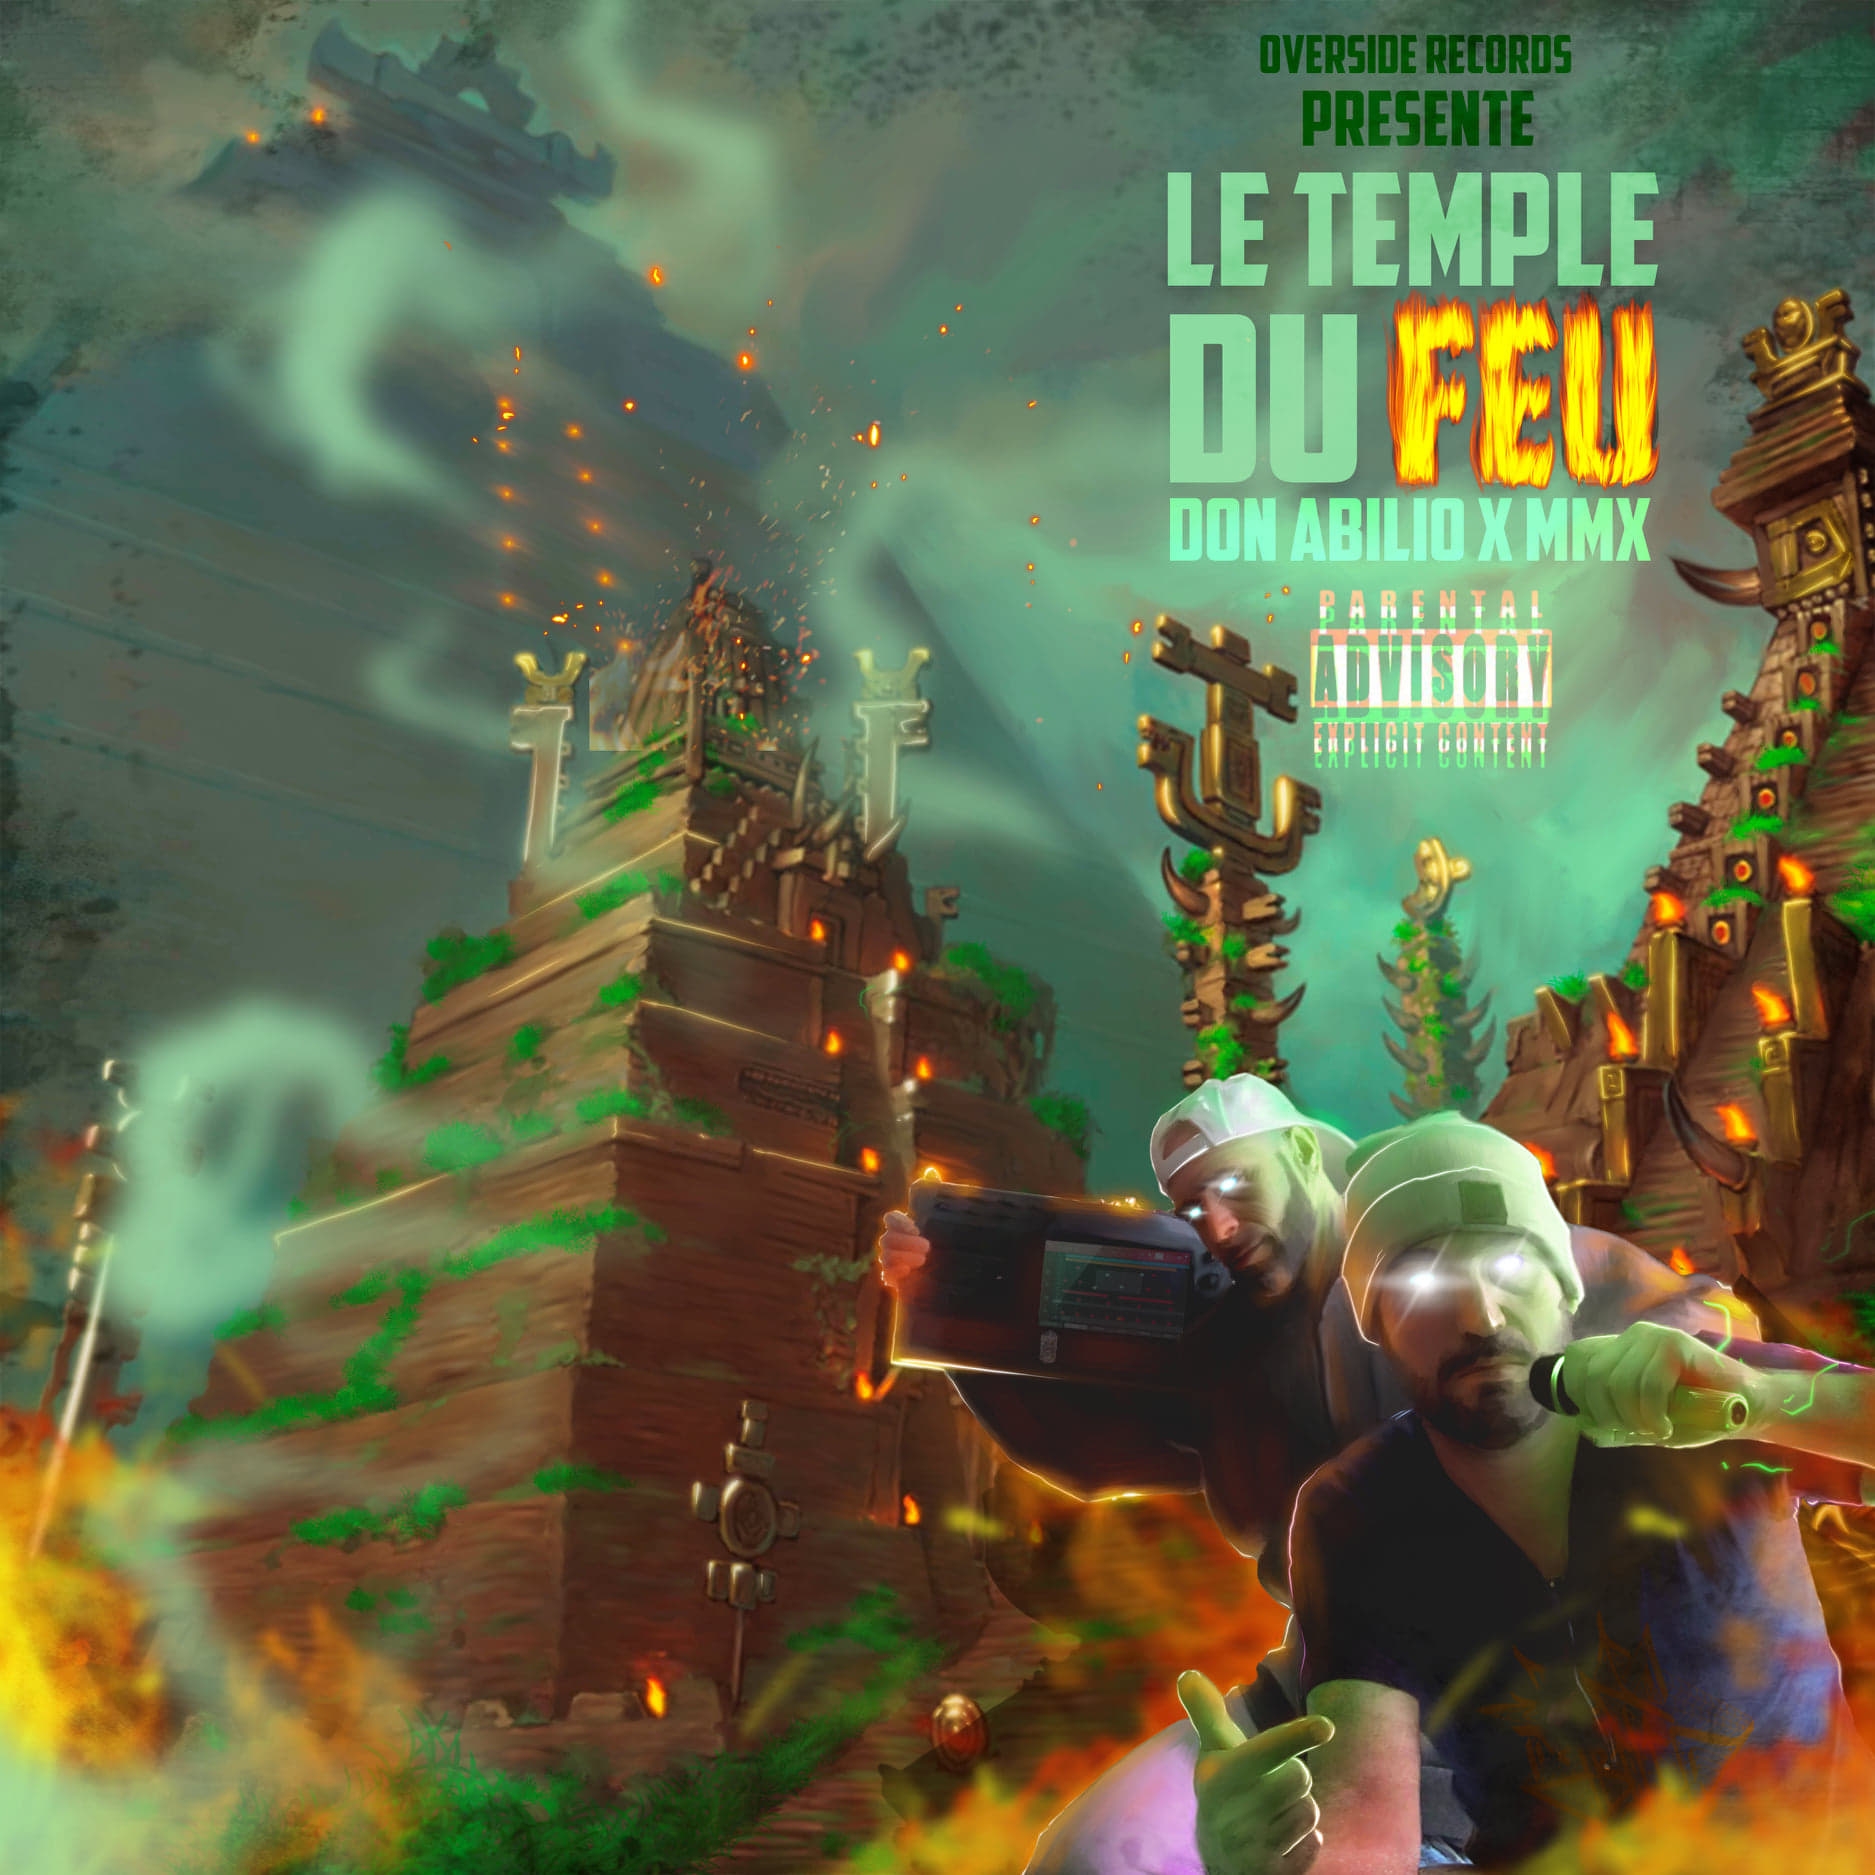 Album Cd "Don Abilio X MMX - Le temple du feu" de sur Scredboutique.com